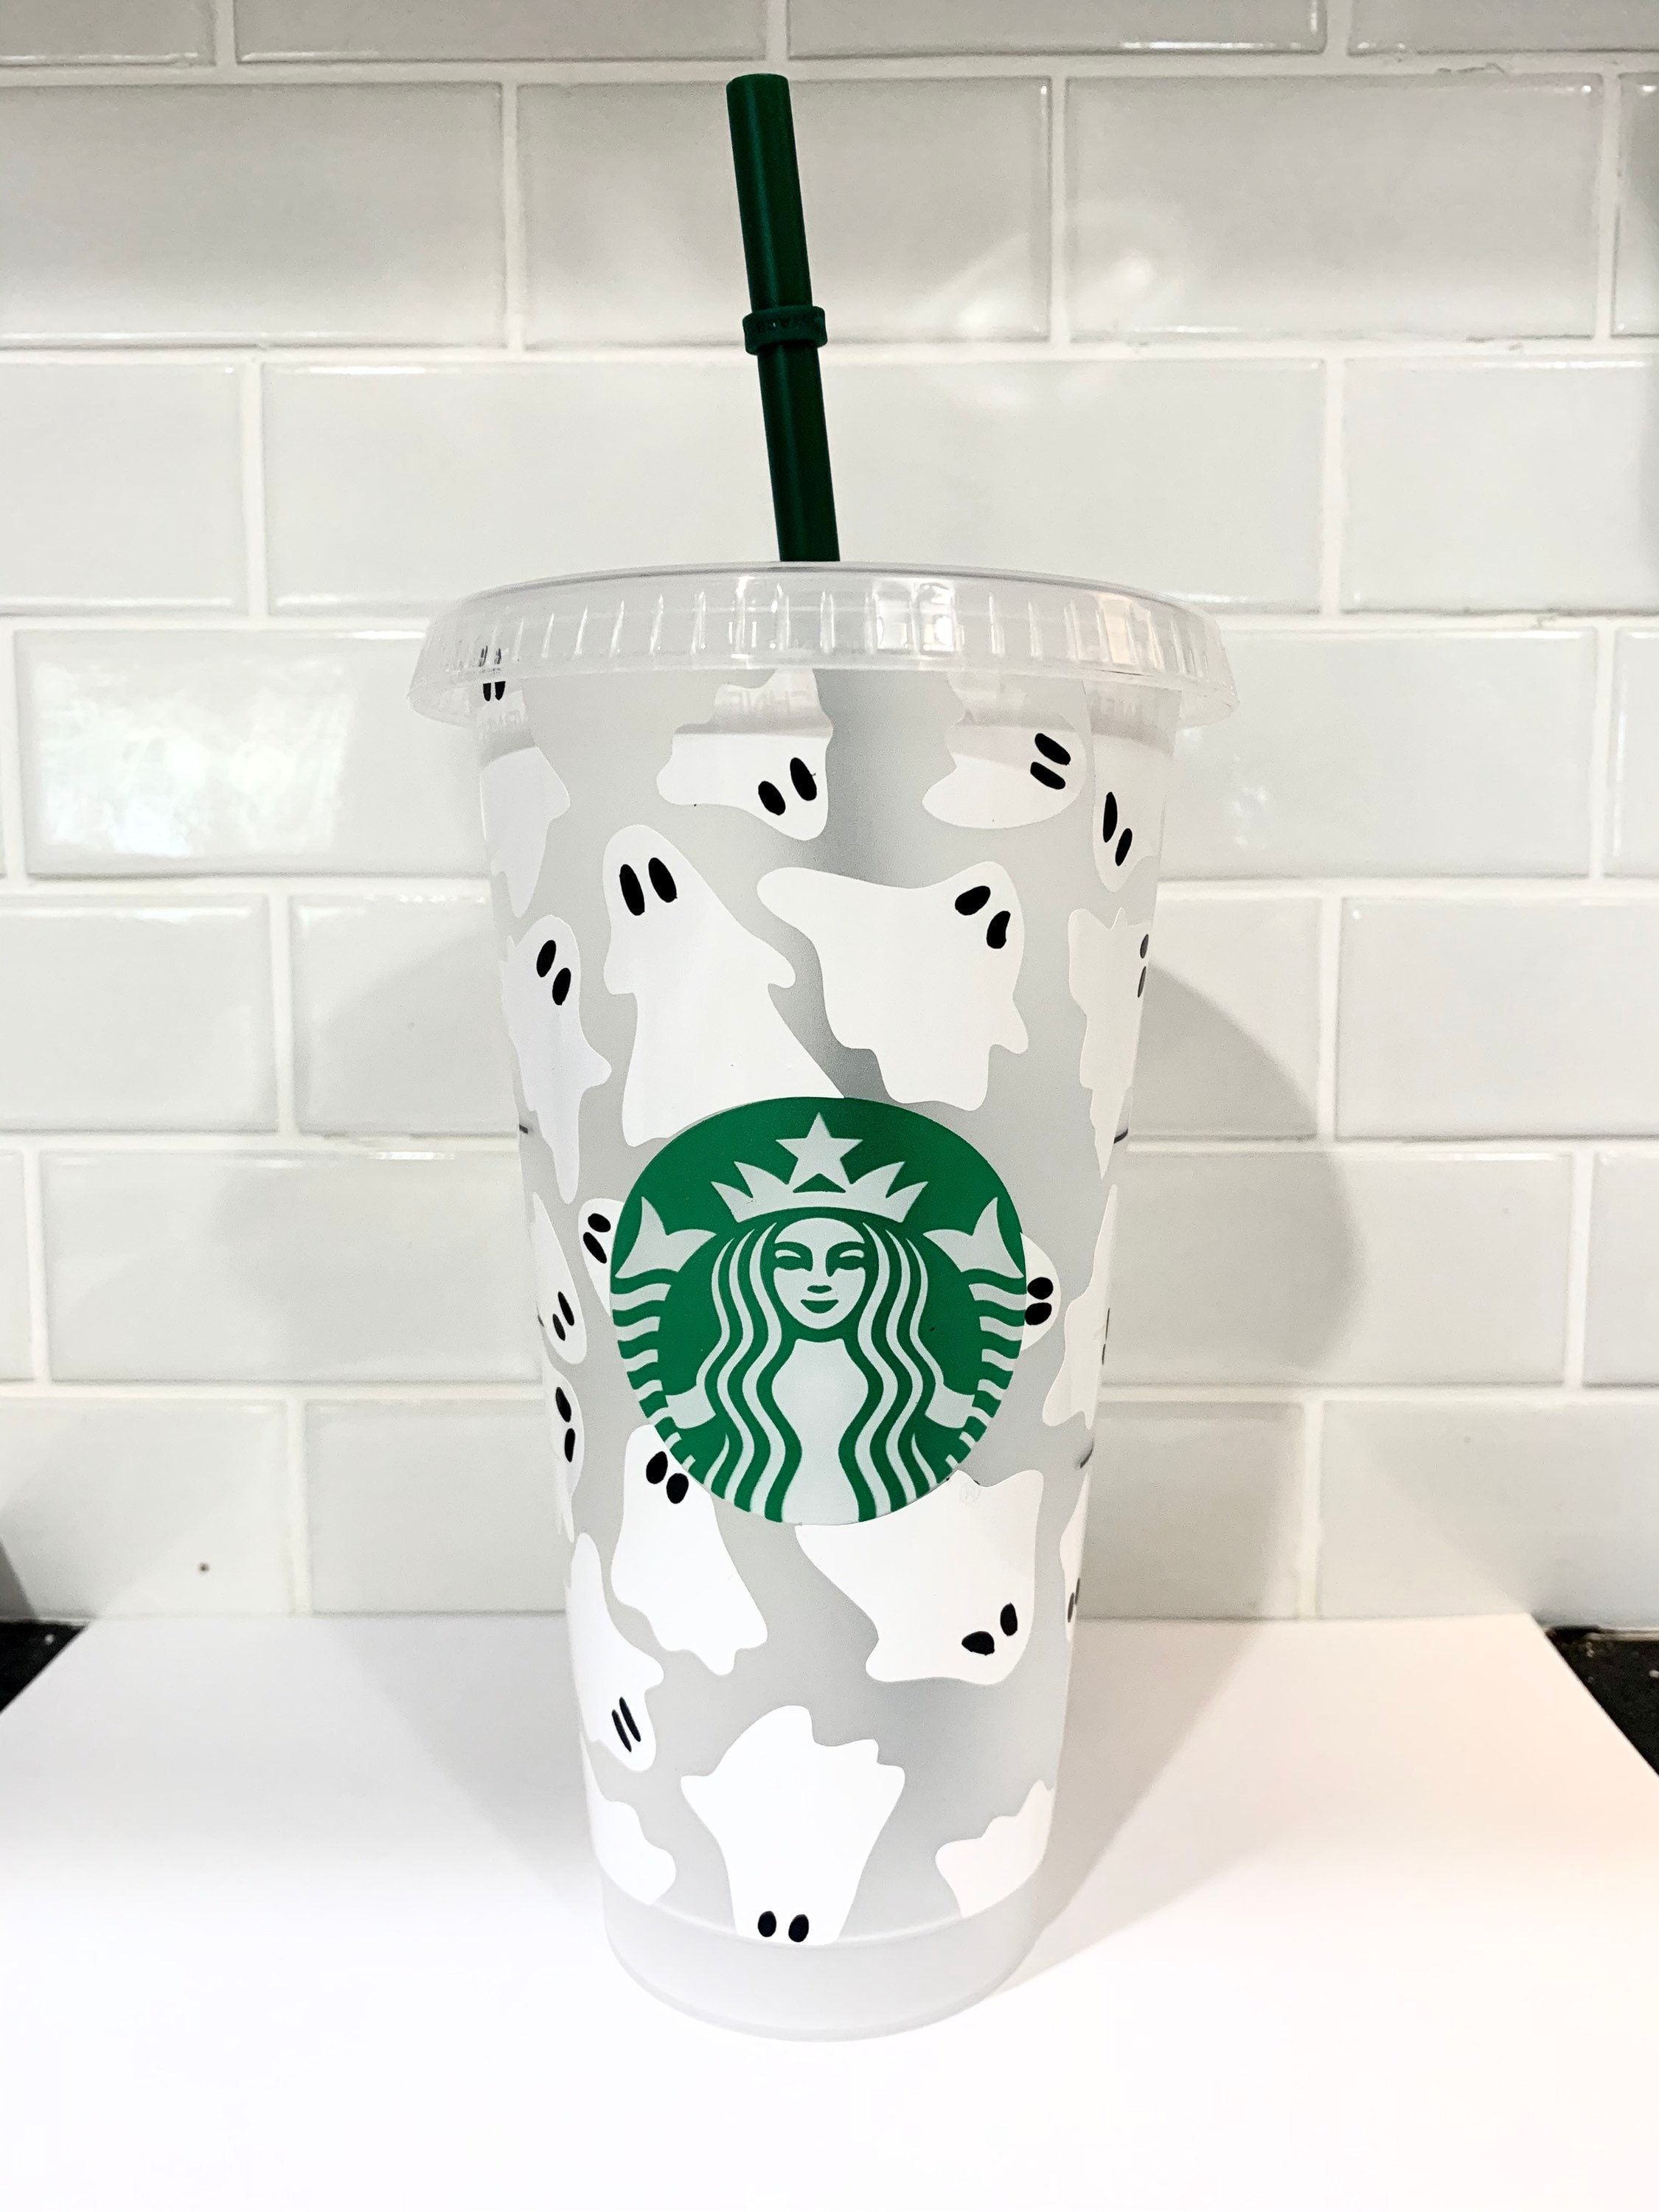 Cute Ghost Starbucks Cup